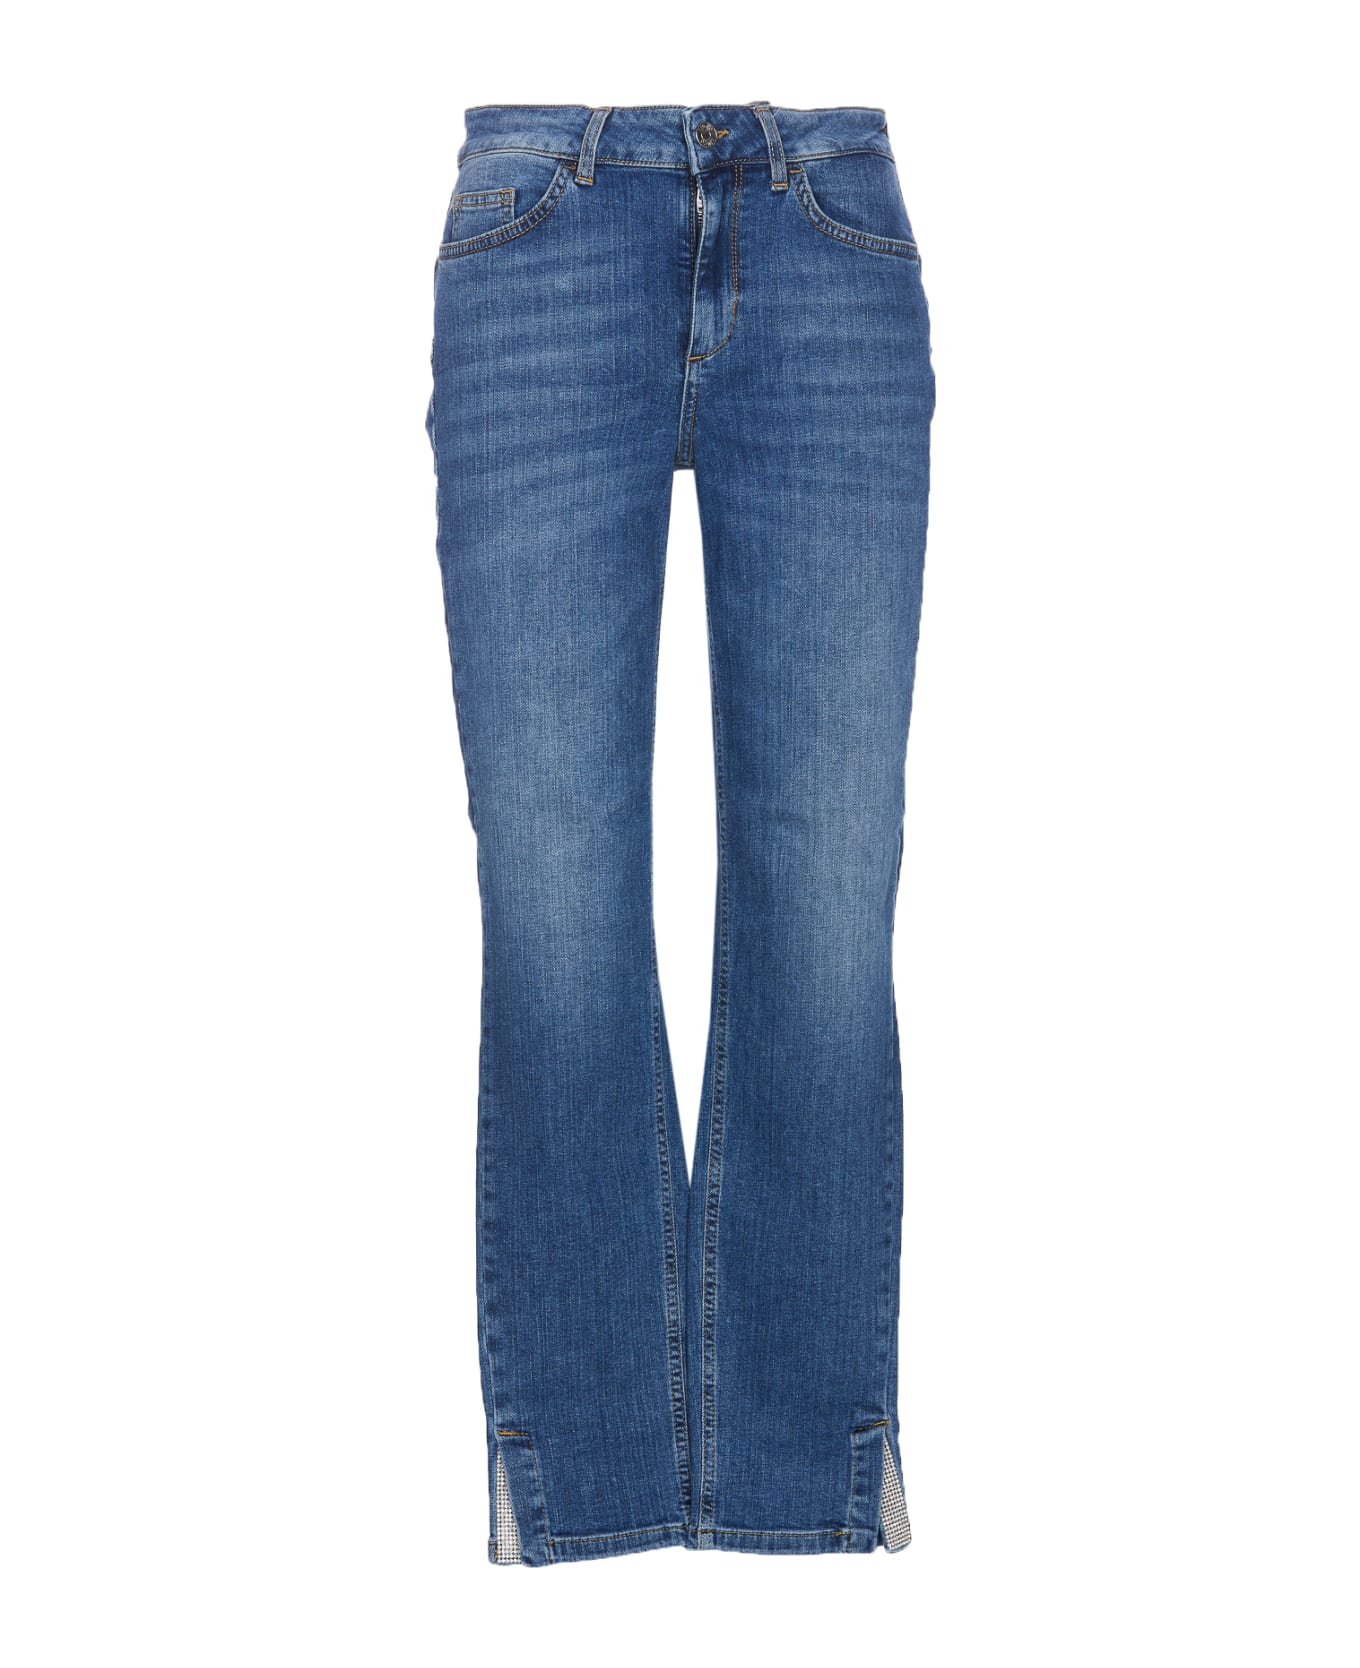 Liu-Jo New Classy Denim Jeans - Blue デニム